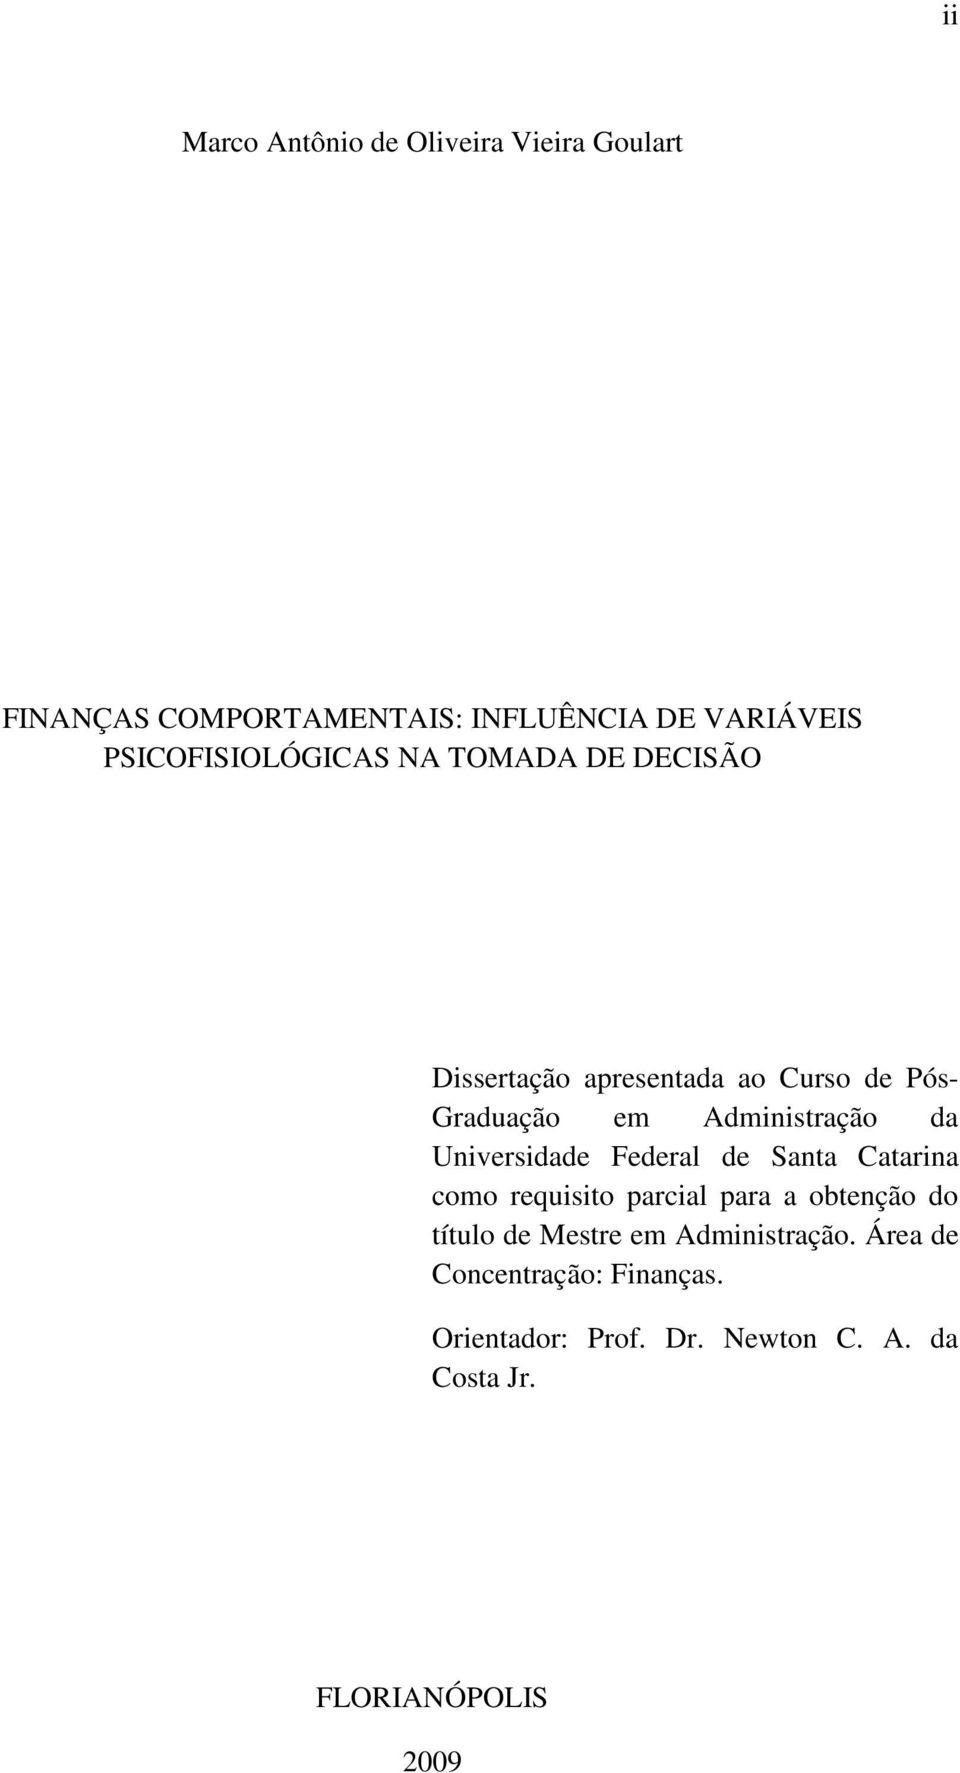 Administração da Universidade Federal de Santa Catarina como requisito parcial para a obtenção do título